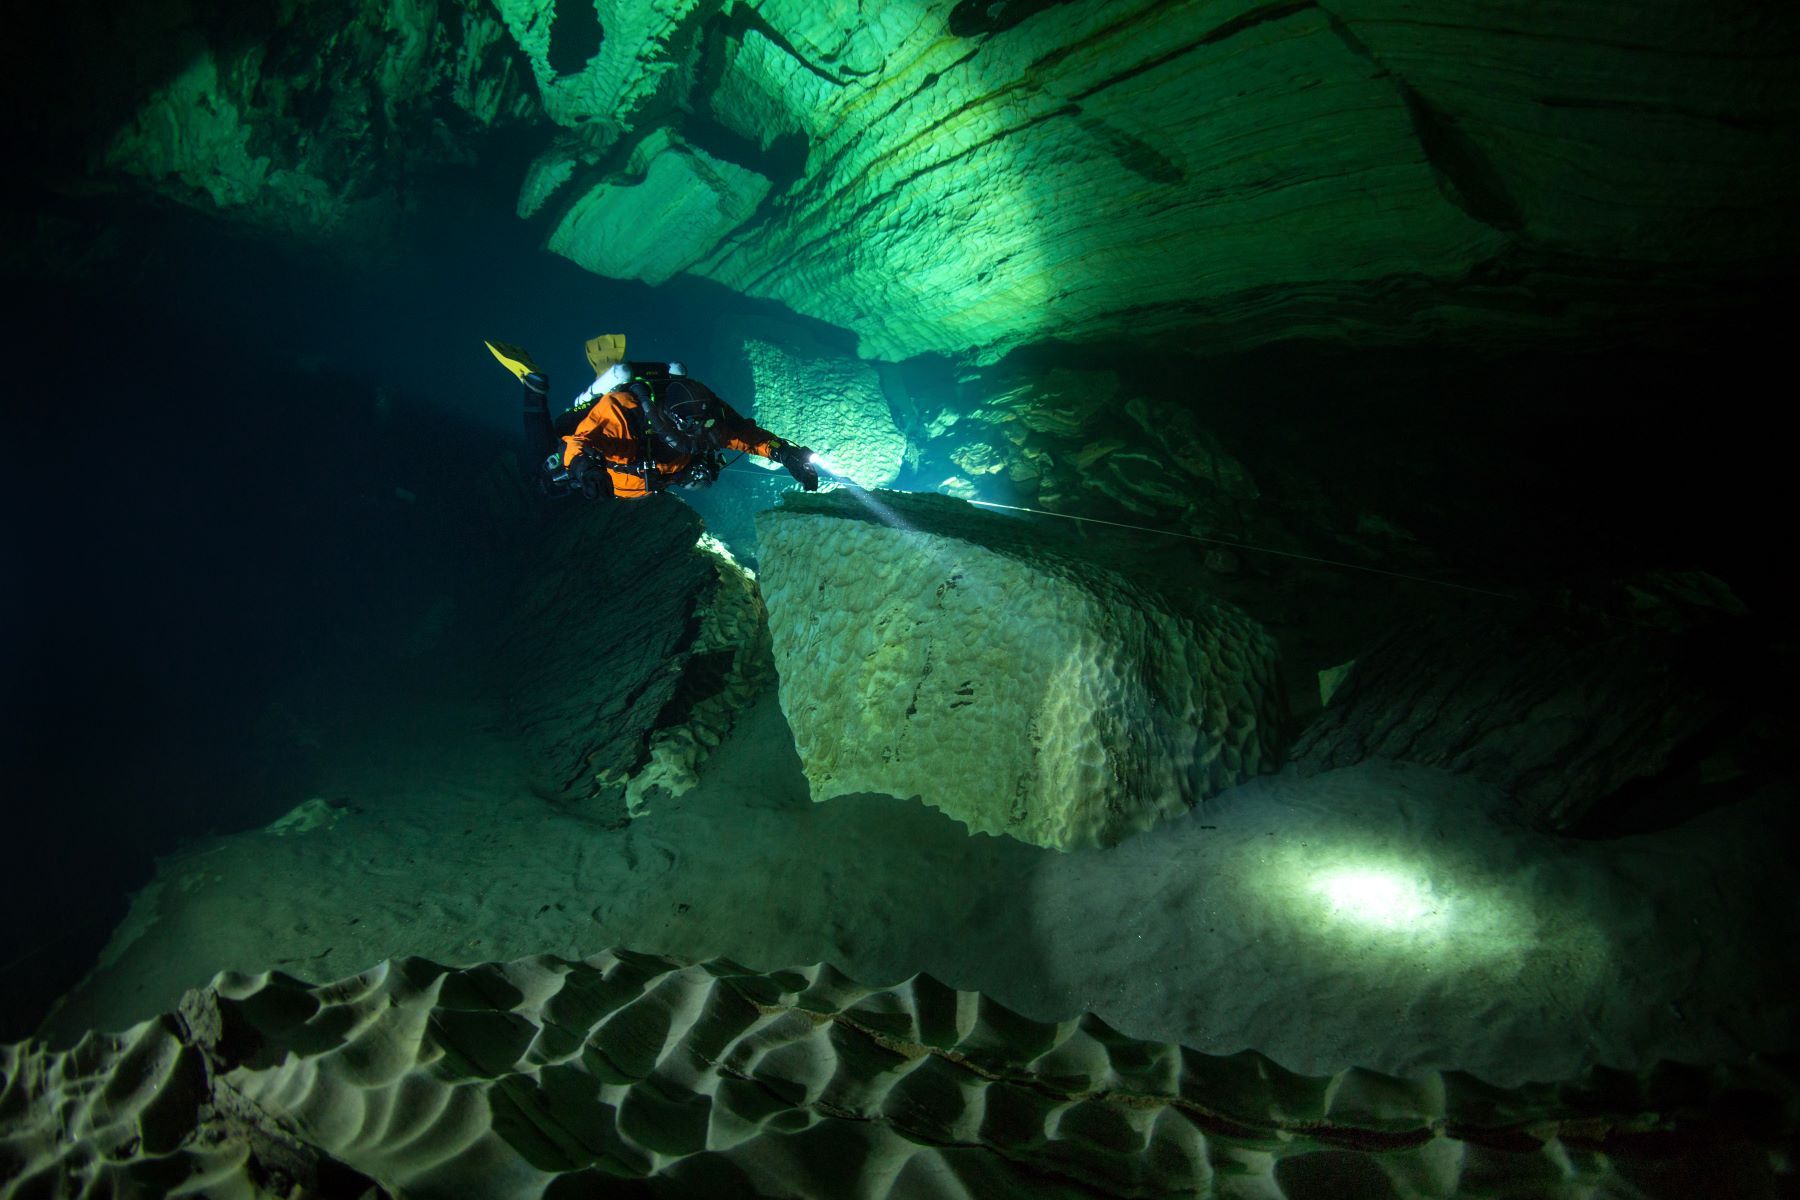 La gruta noruega continúa siendo un misterio para la humanidad